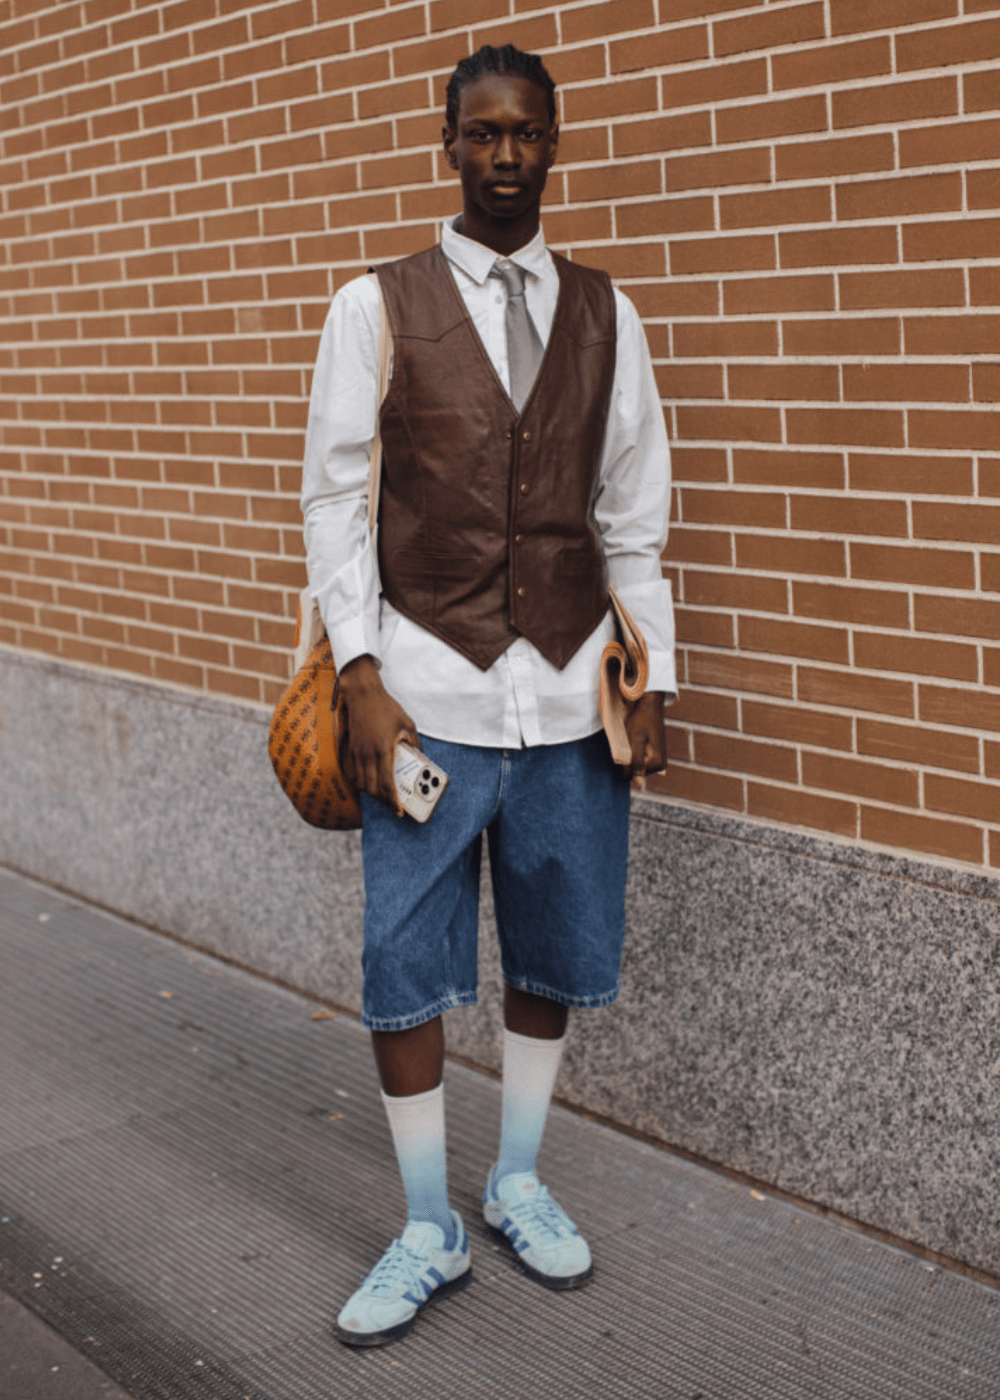 Street Style de Milão - bermuda jeans, colete, meias brancas longas, tênis adidas, camisa e gravata - street style de Milão - inverno - homem negro em pé usando óculos de sol - https://stealthelook.com.br